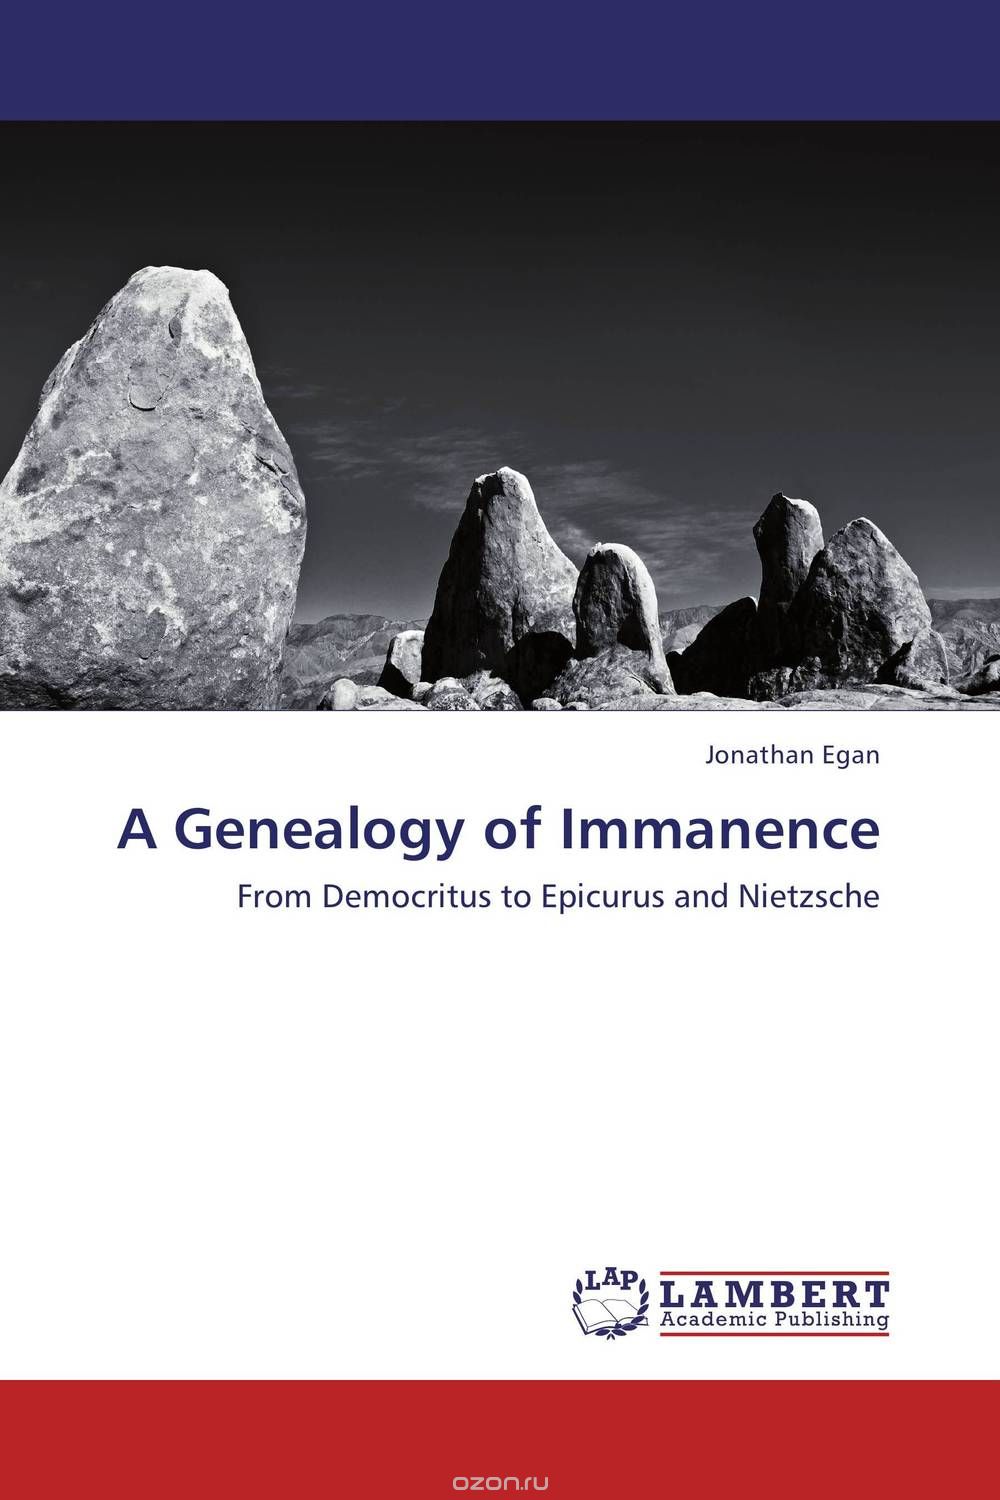 Скачать книгу "A Genealogy of Immanence"